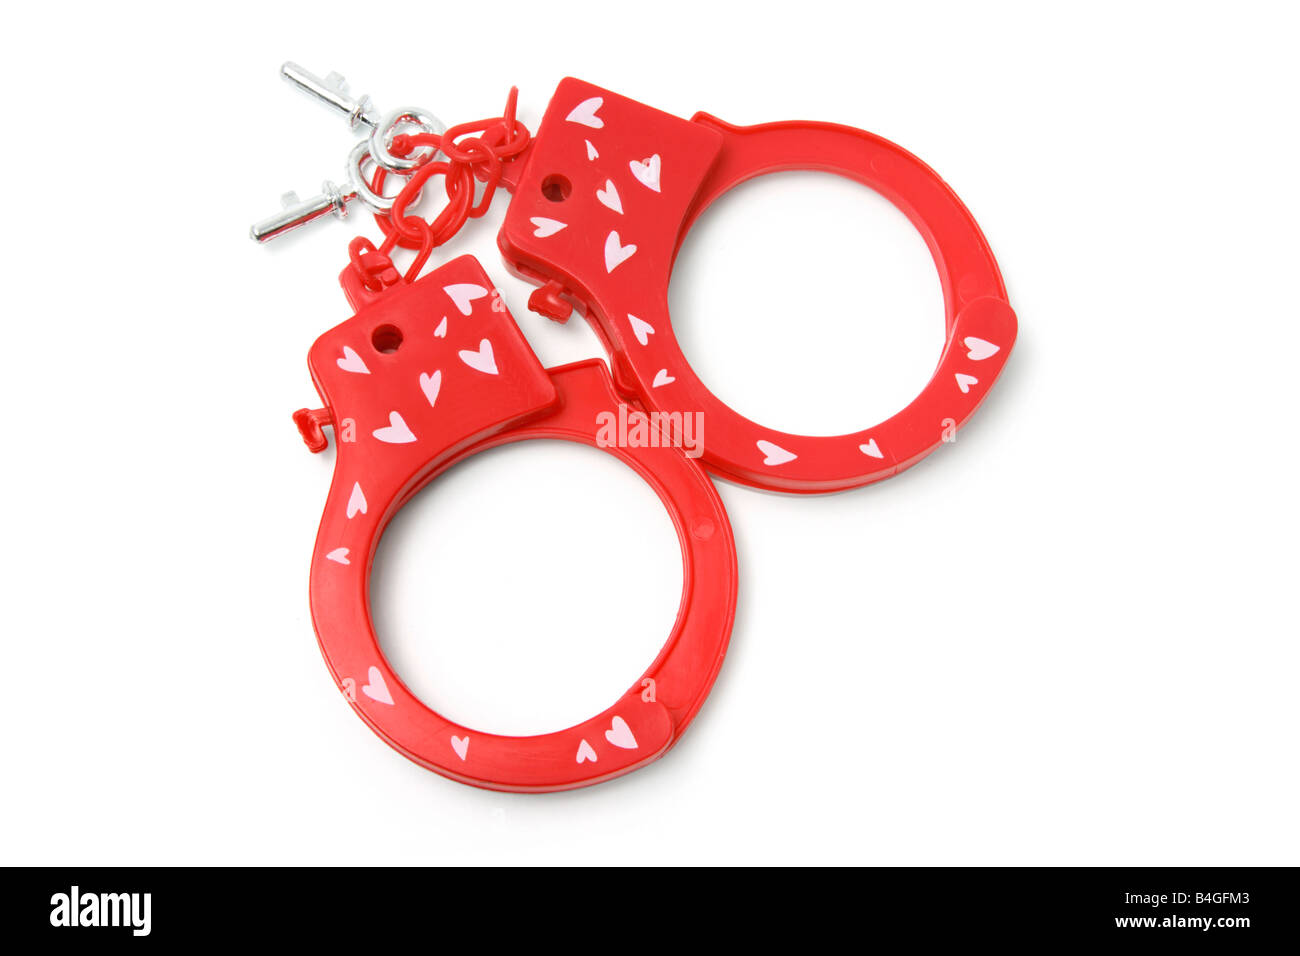 Plastic Handcuffs Stock Photo